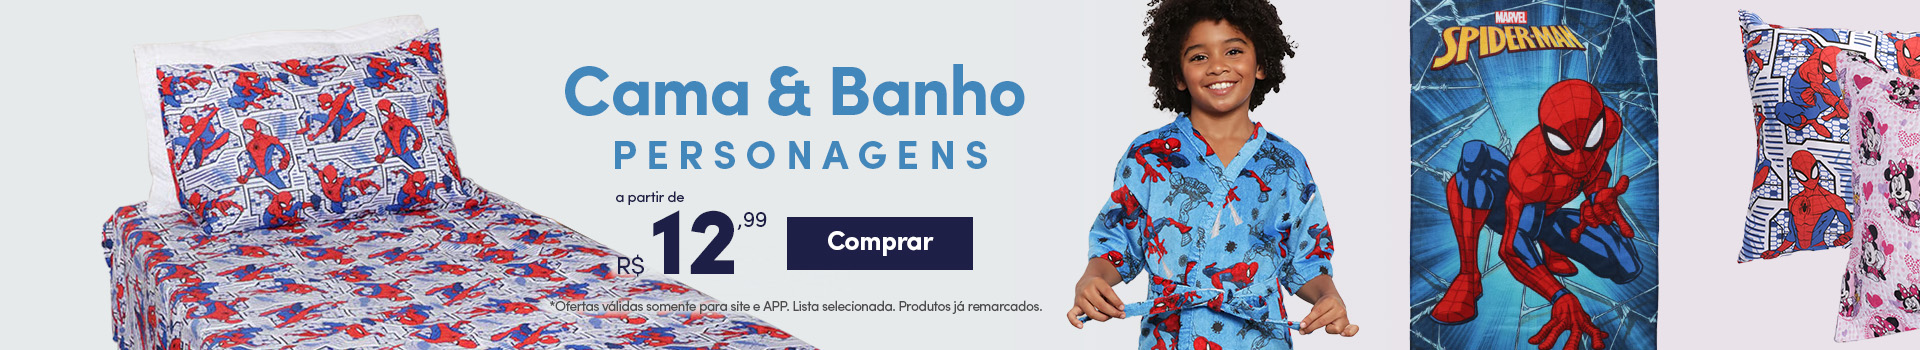 Cama e Banho Personagens, a partir de R$ 12,99